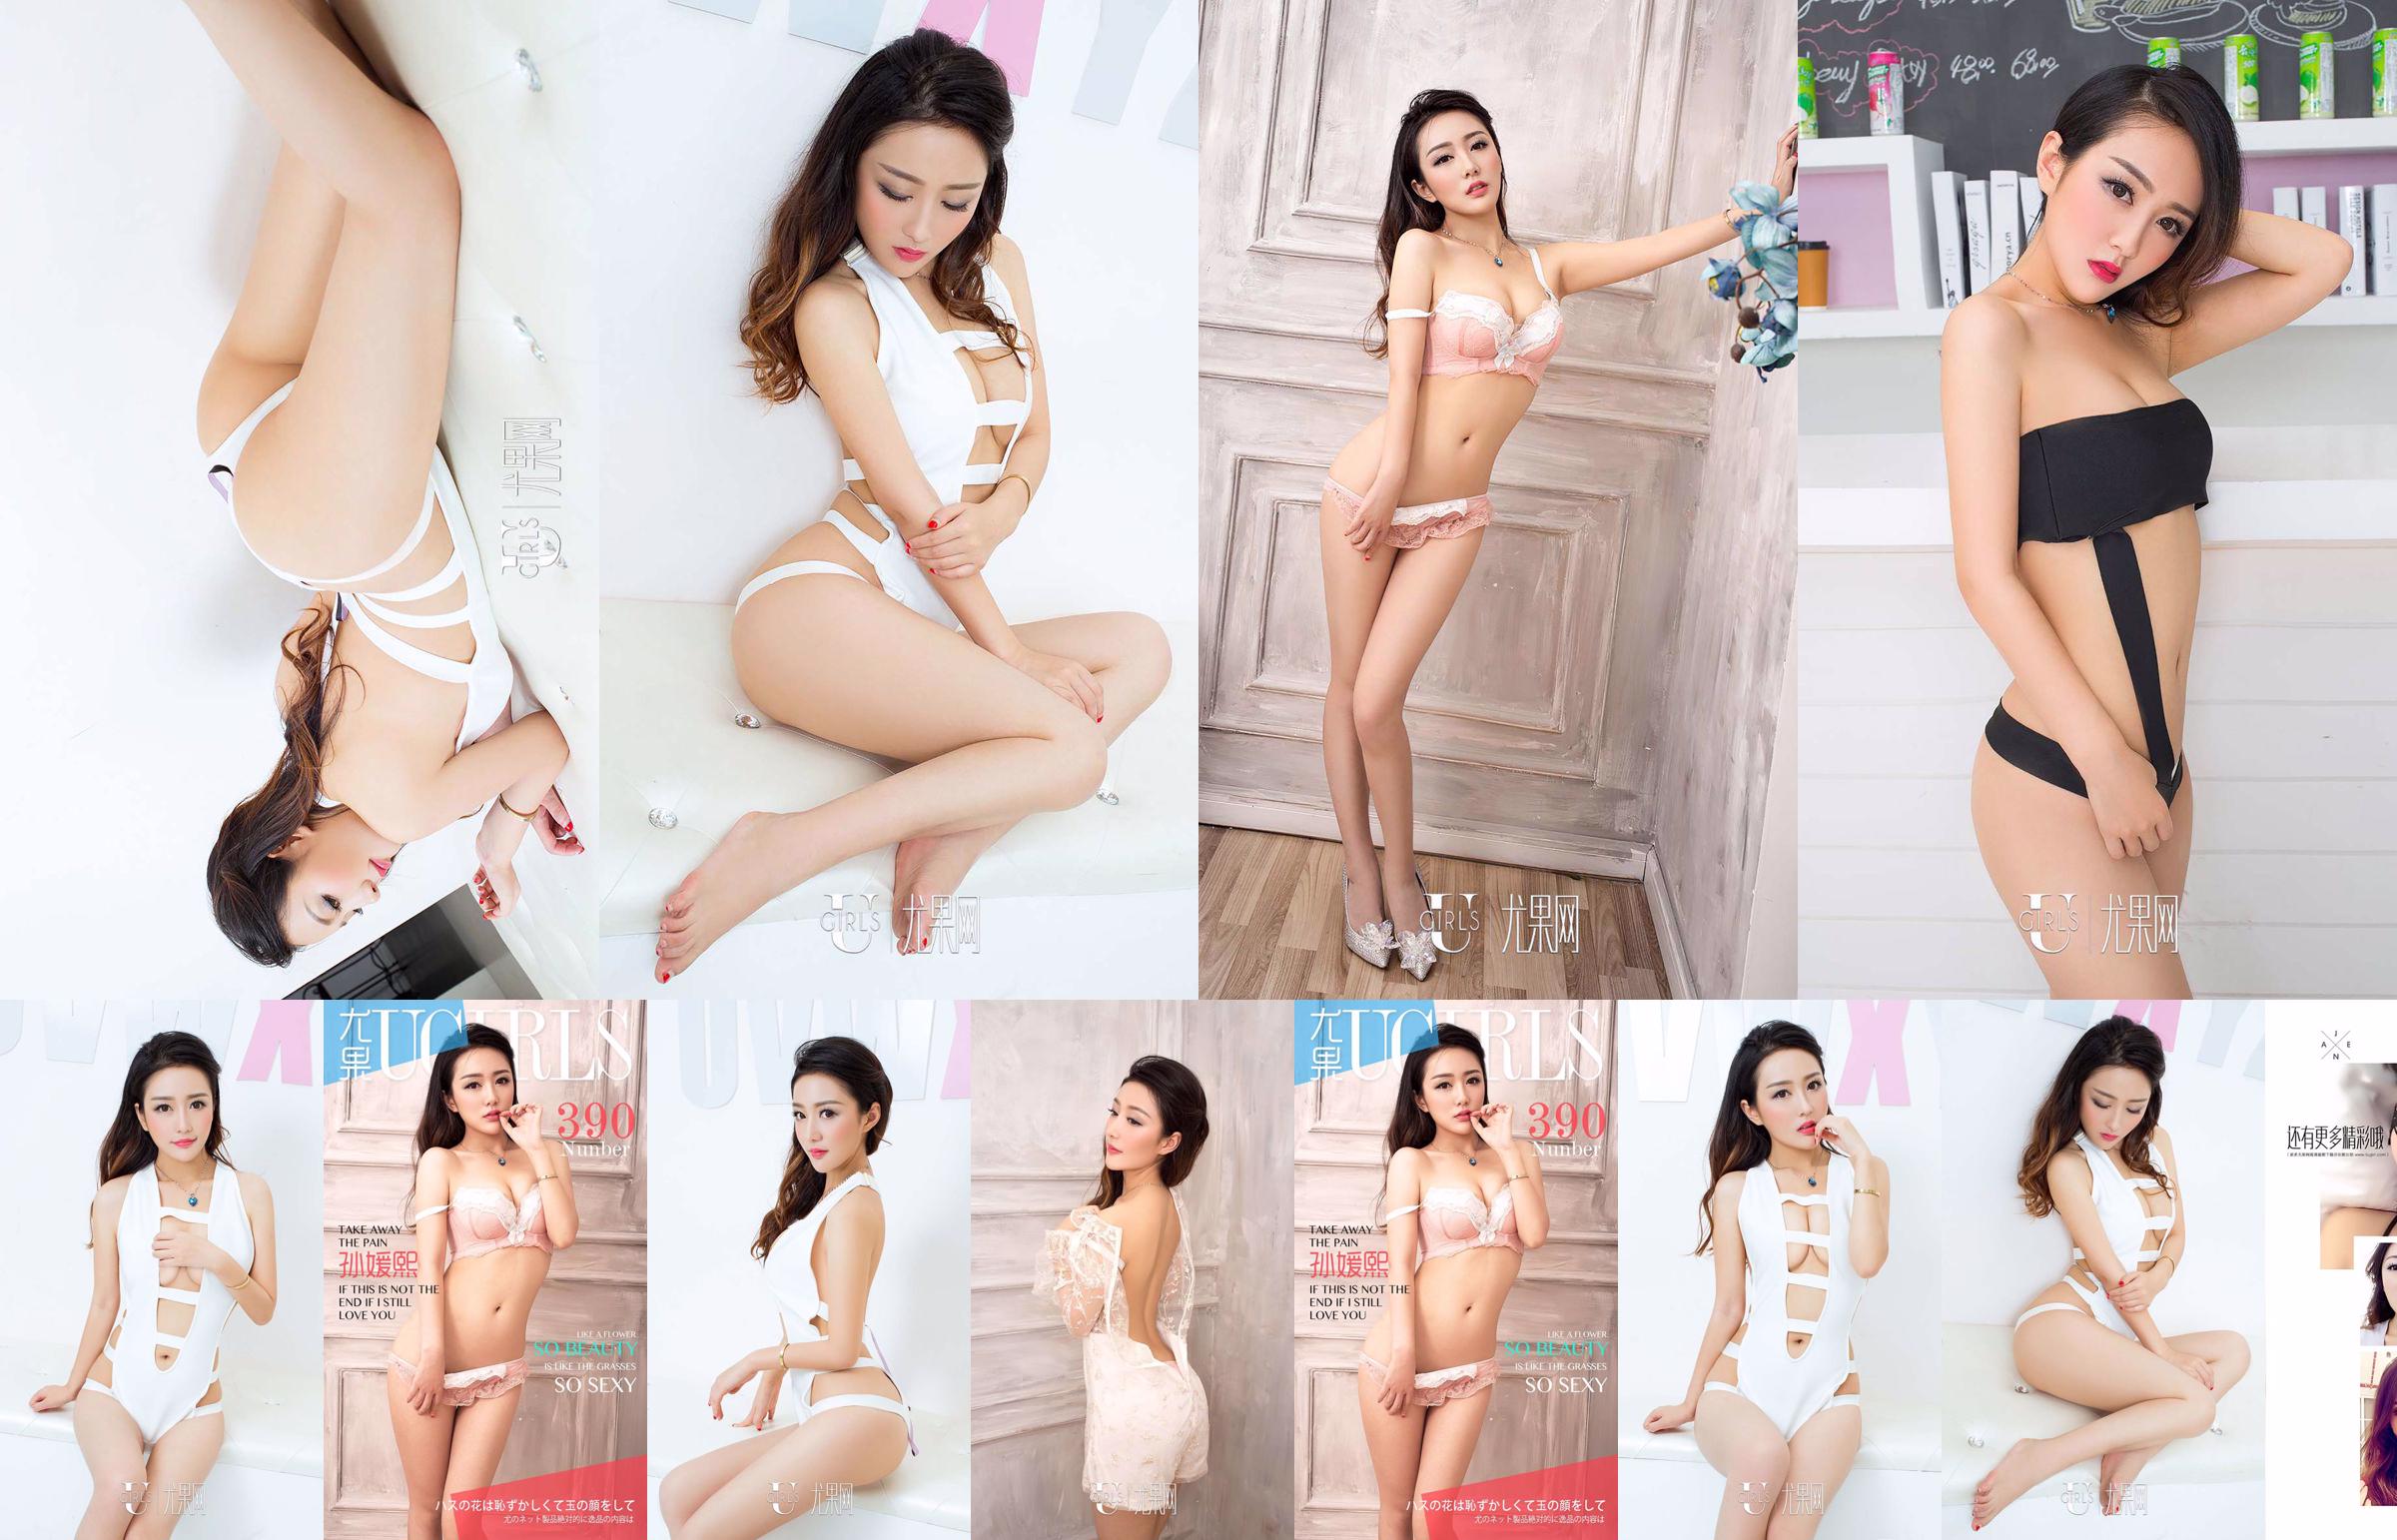 Sun Yuanxi "tão bela tão sexy" [爱 优 物 Ugirls] No.390 No.e53576 Página 20